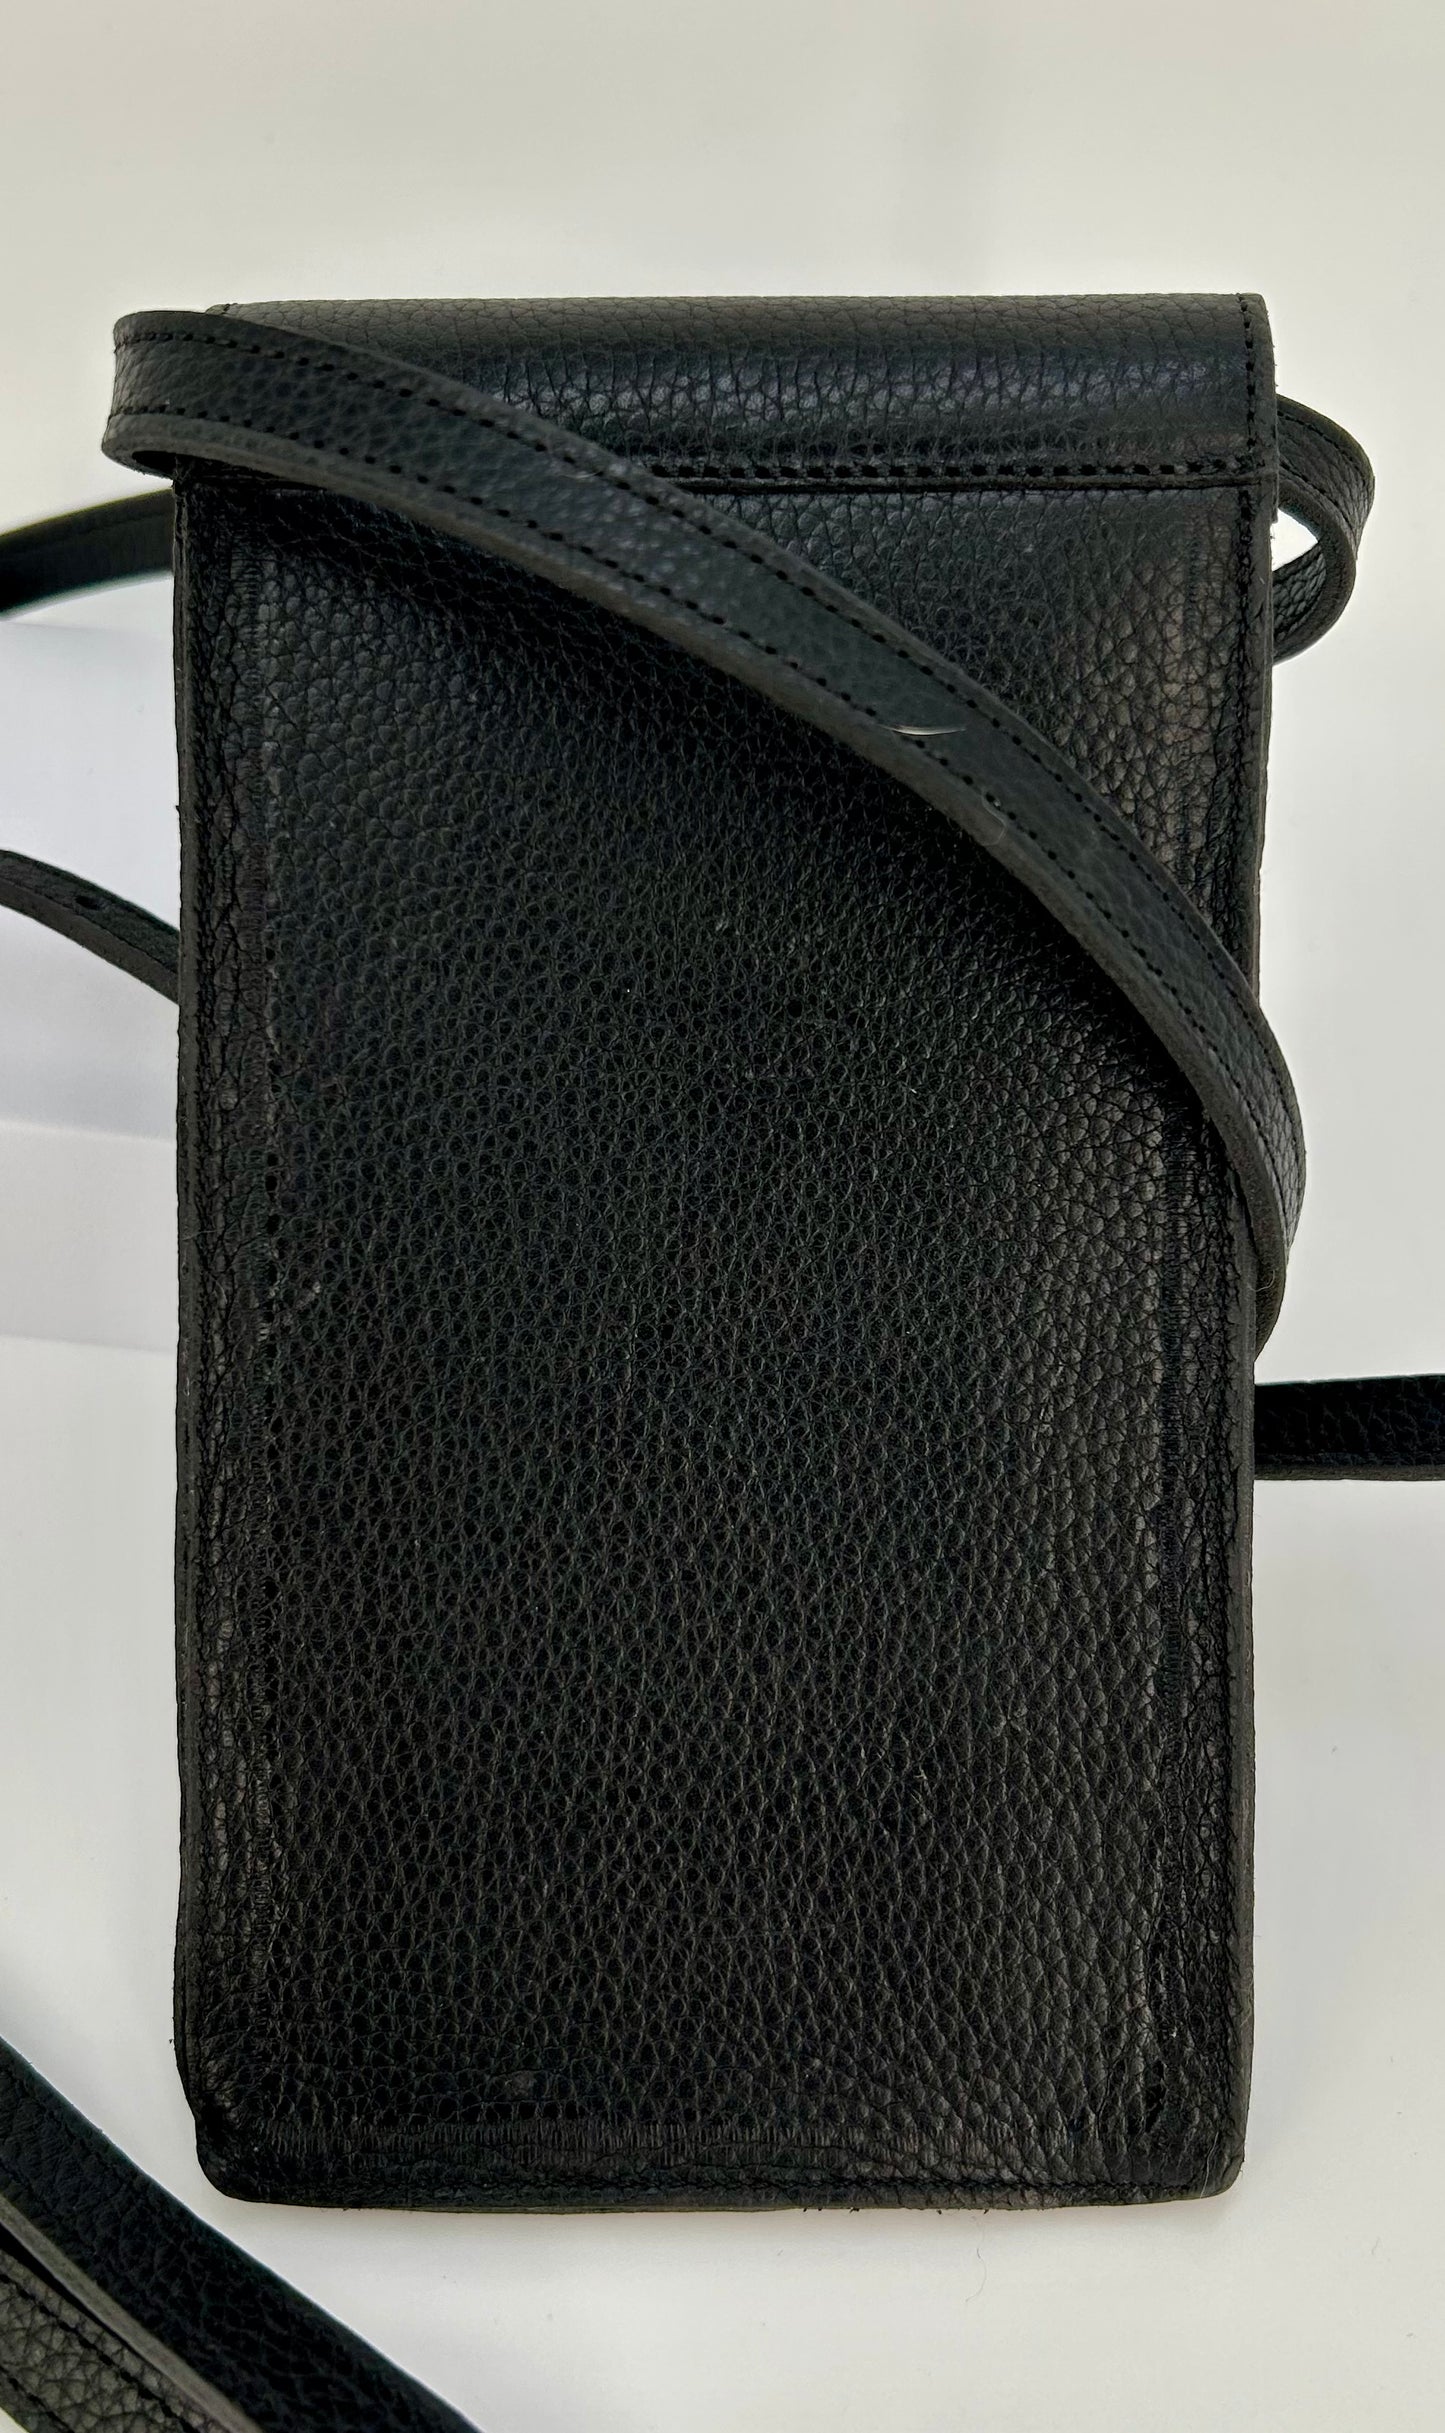 Kingsley Phone Bag Paxson Black, Nature Black, Oak Black